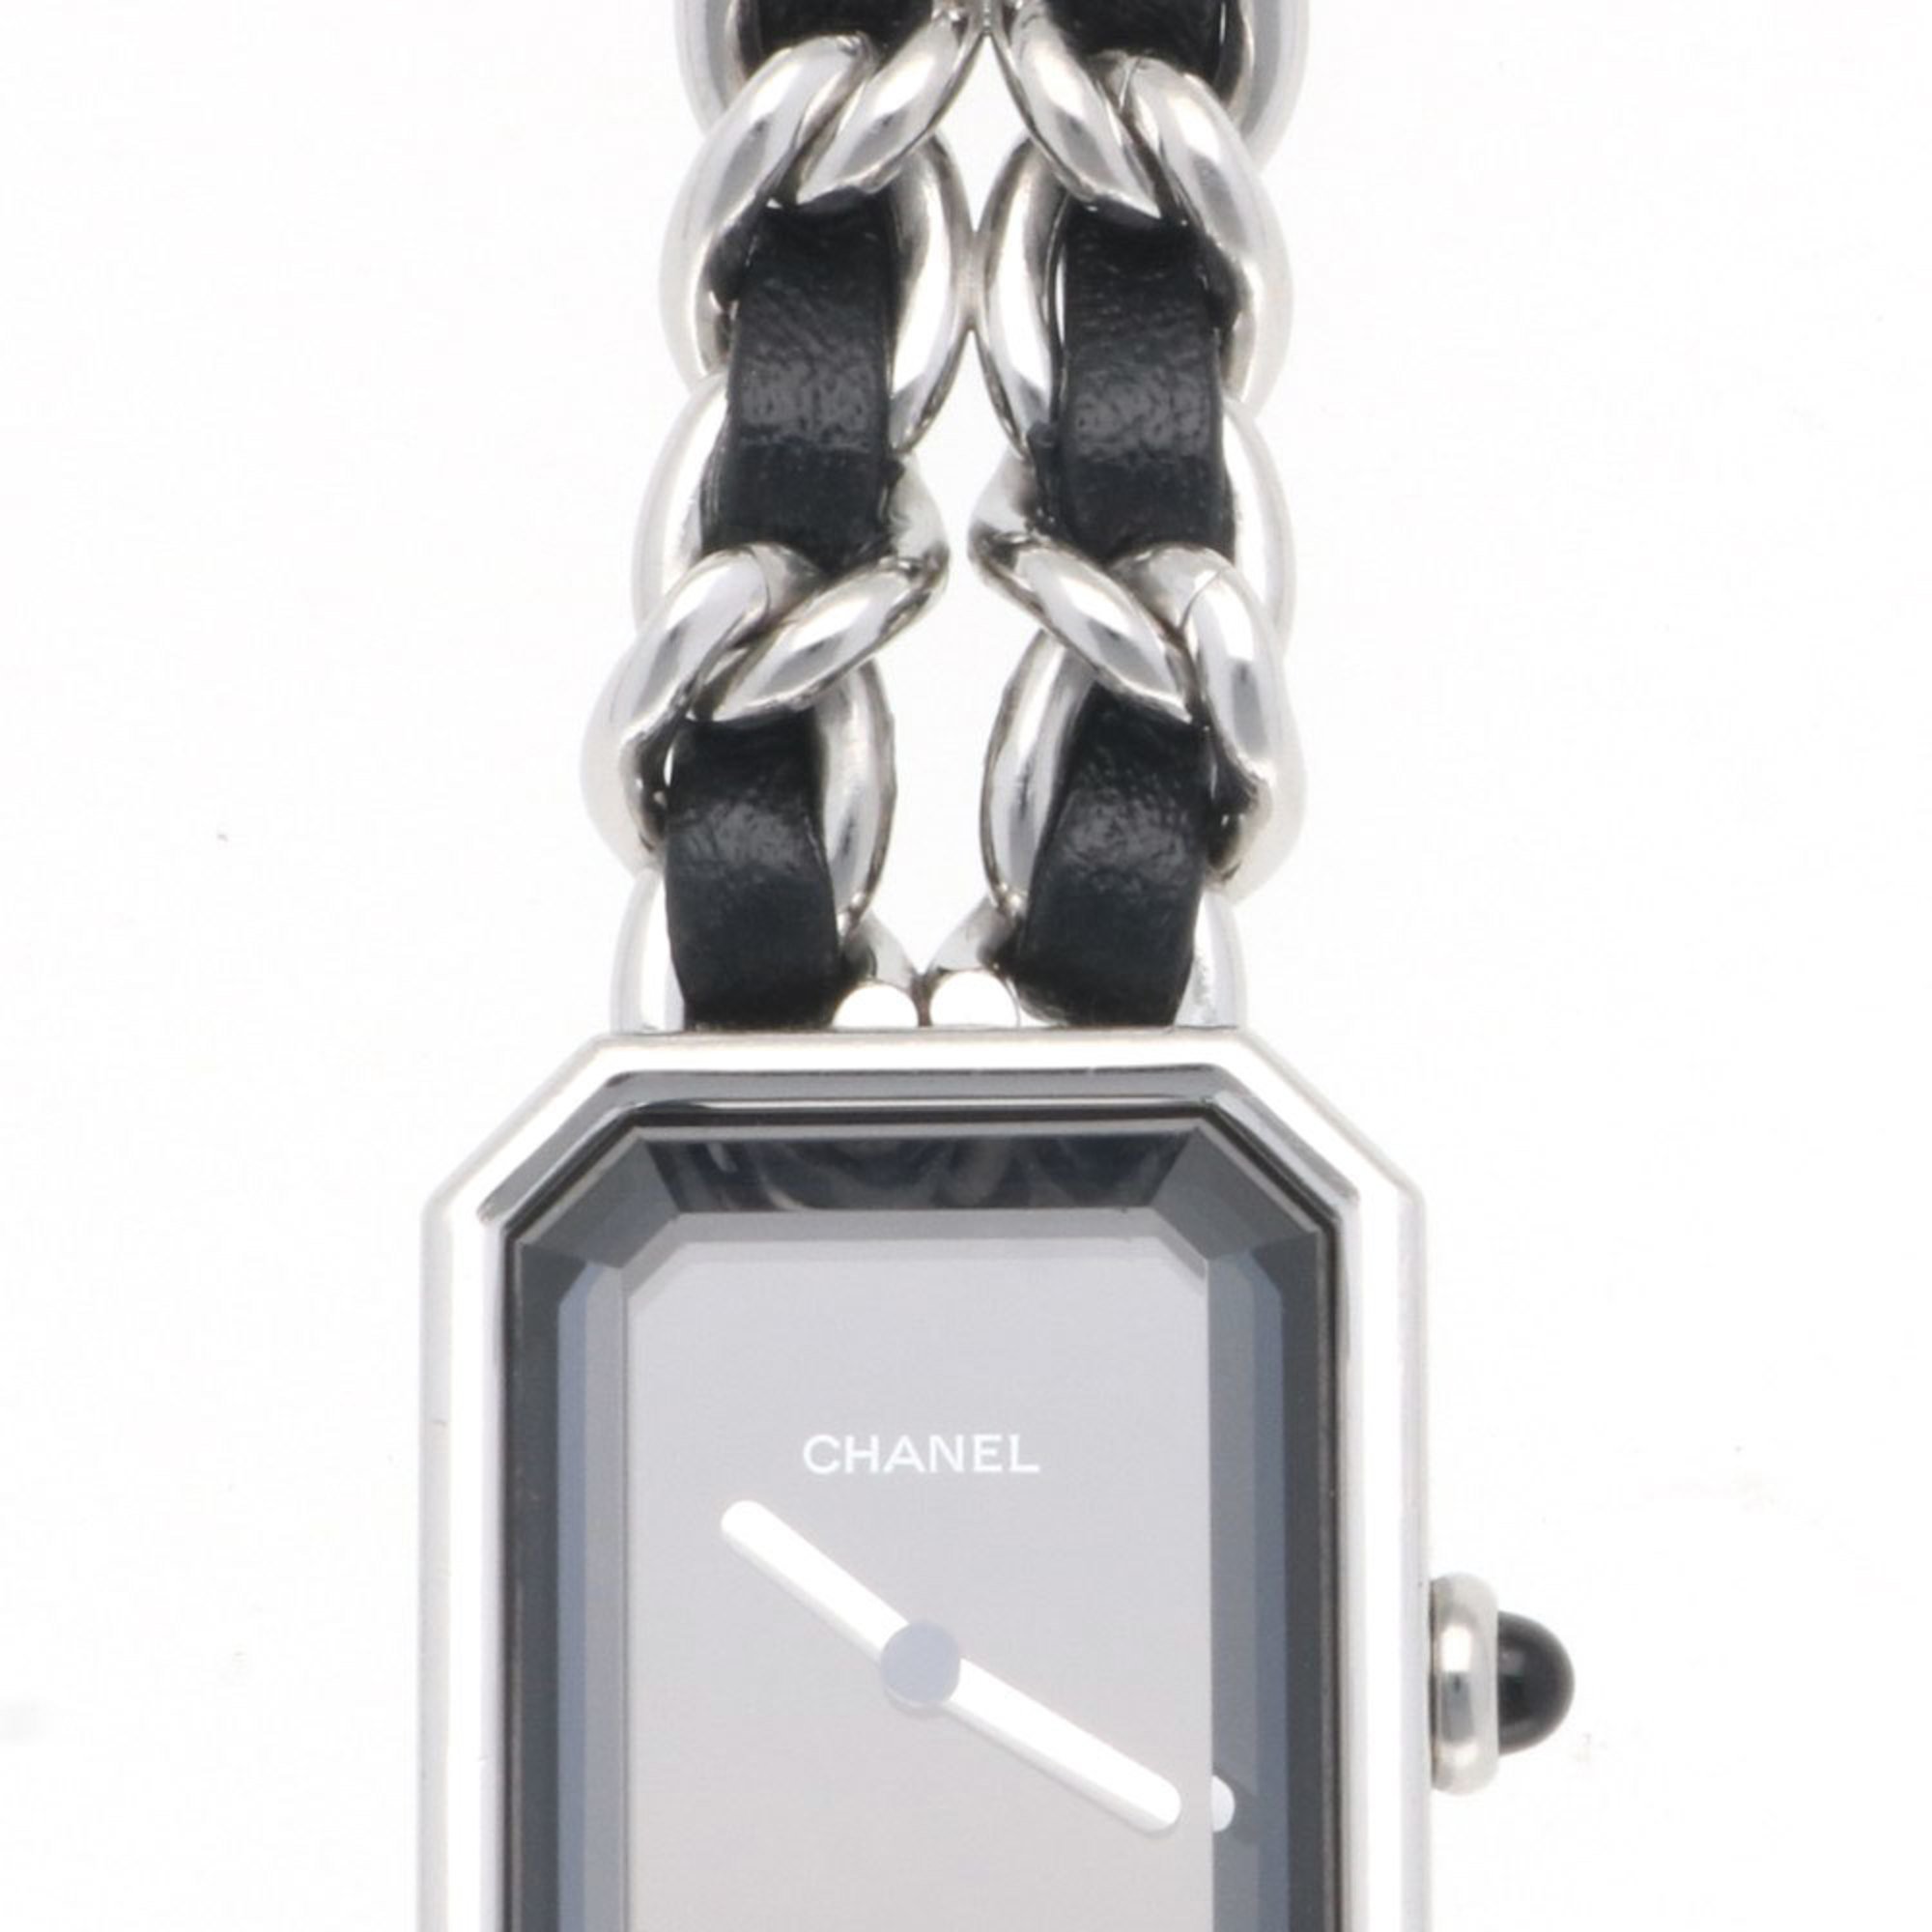 Chanel Premiere M Watch Stainless Steel H0451 Quartz Ladies CHANEL Defective Item Bracelet